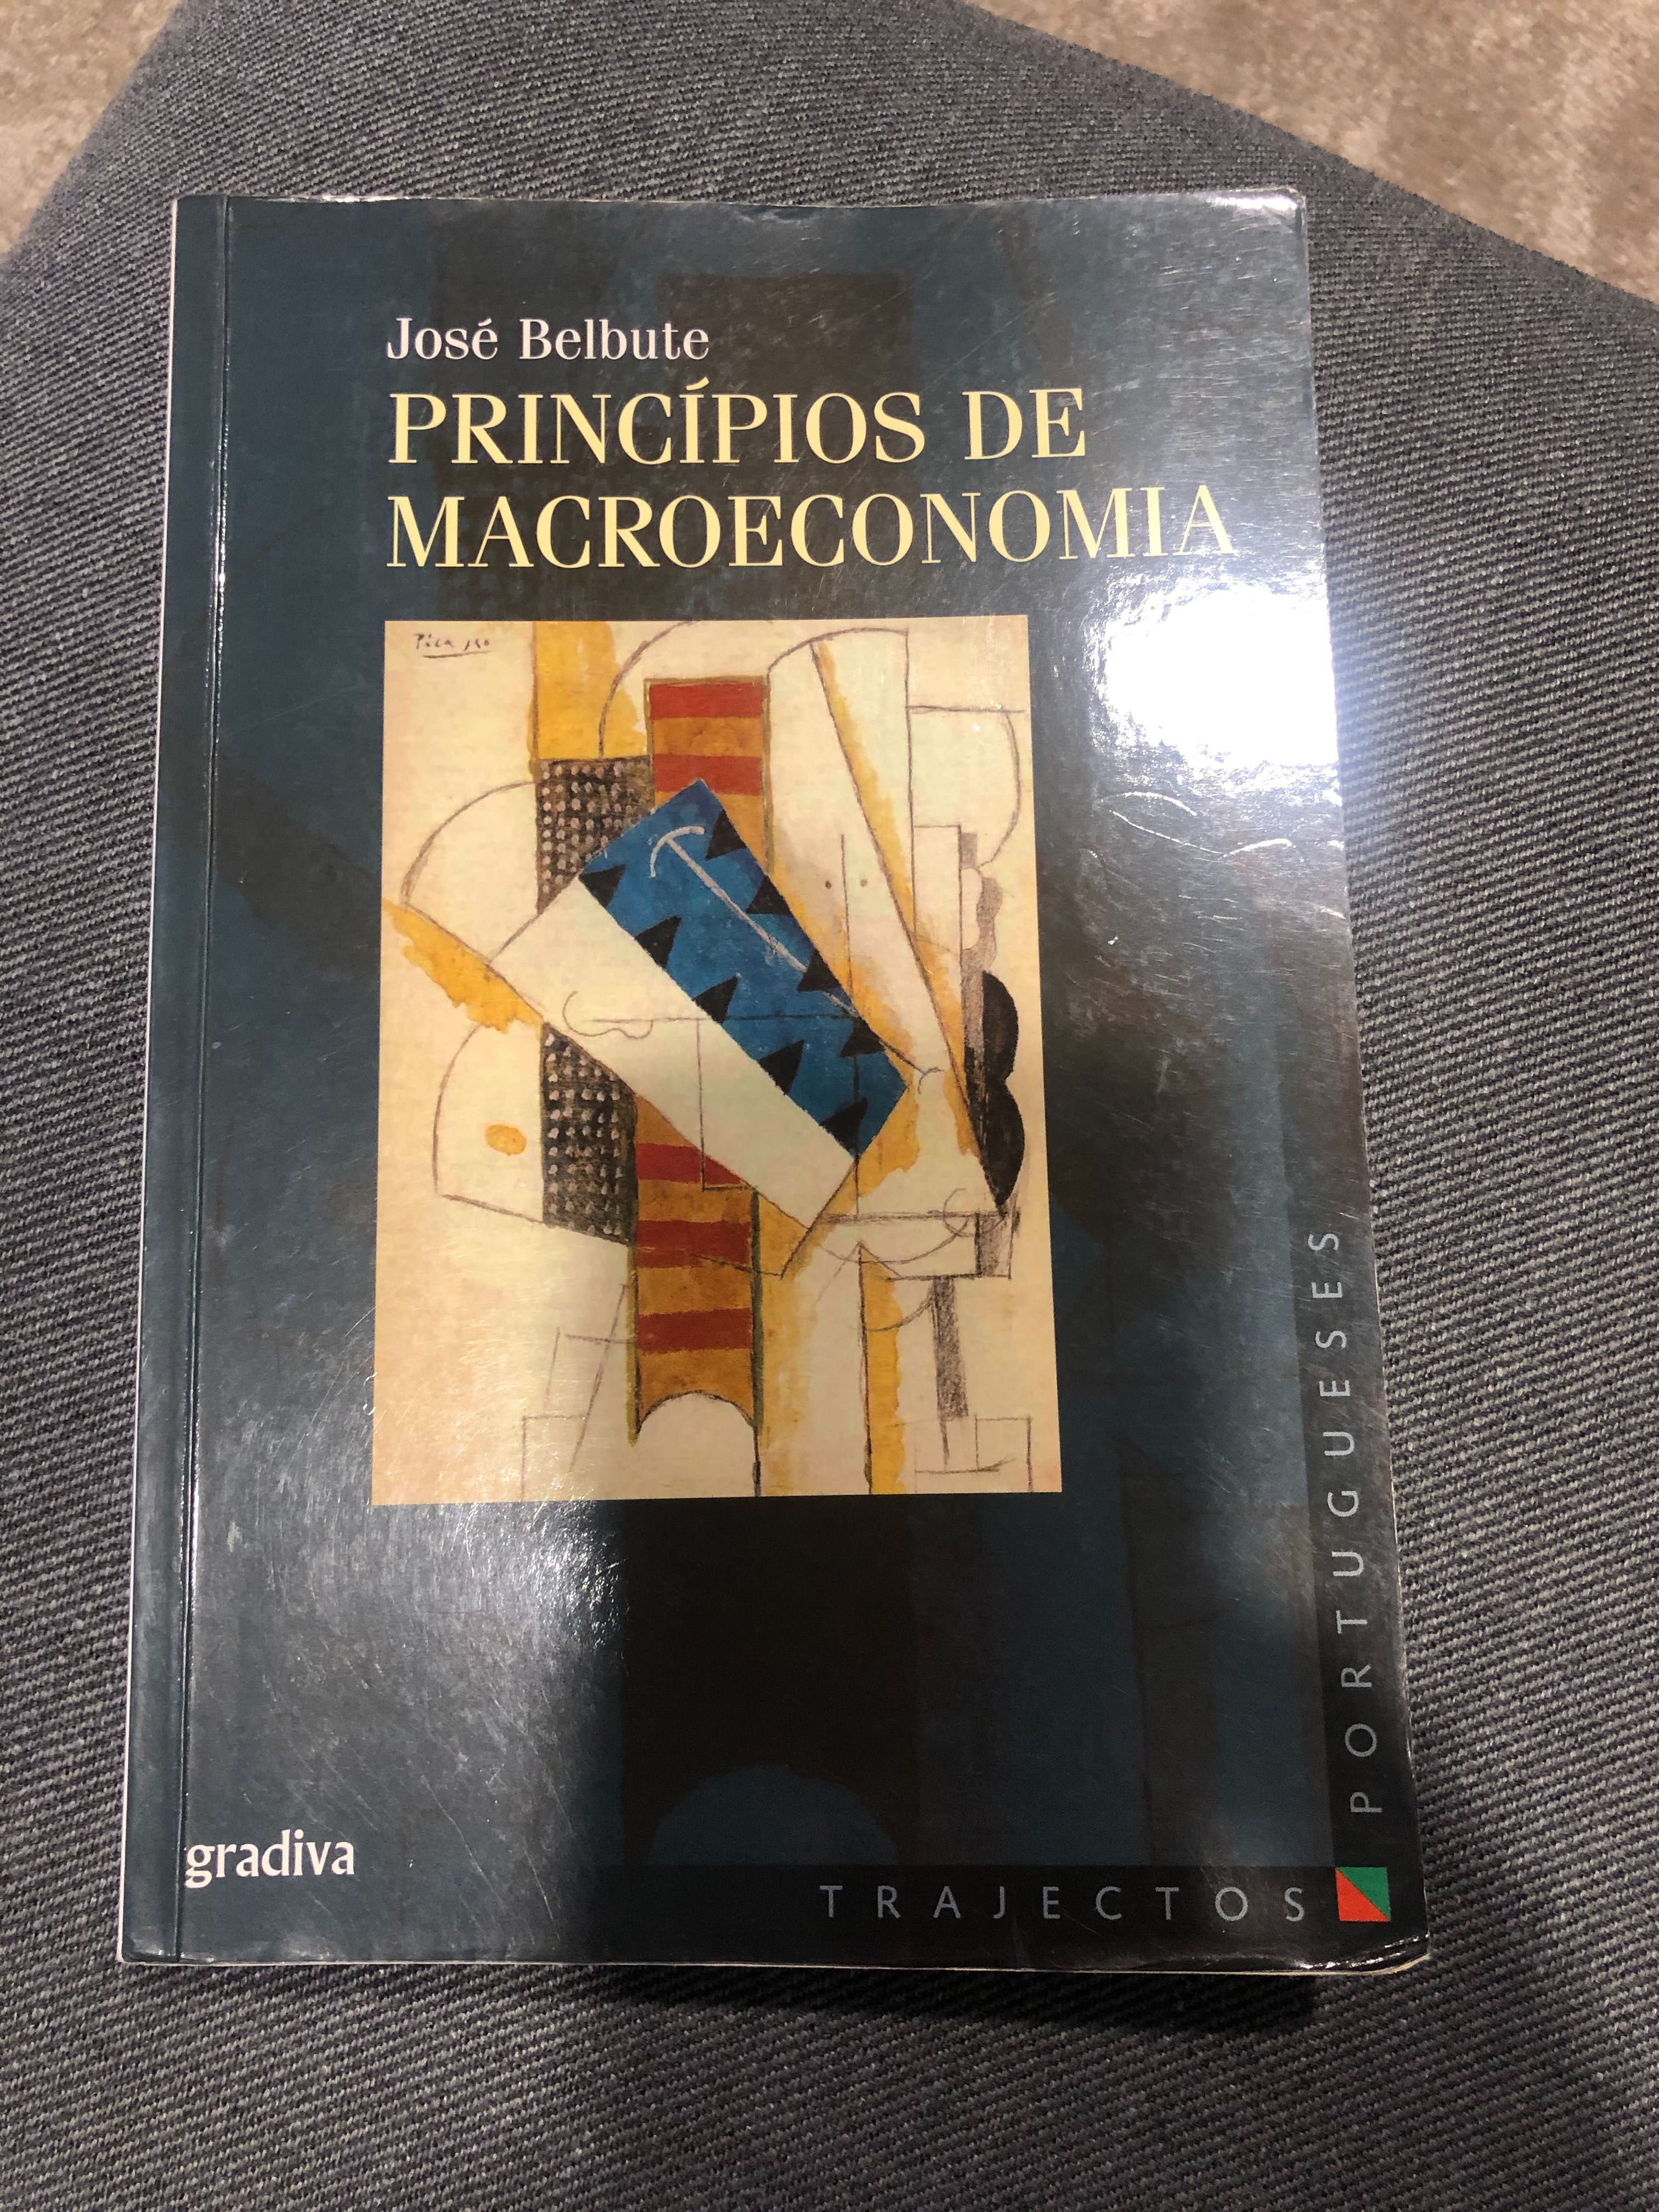 Princípios de Macroeconomia, Jose Belbute